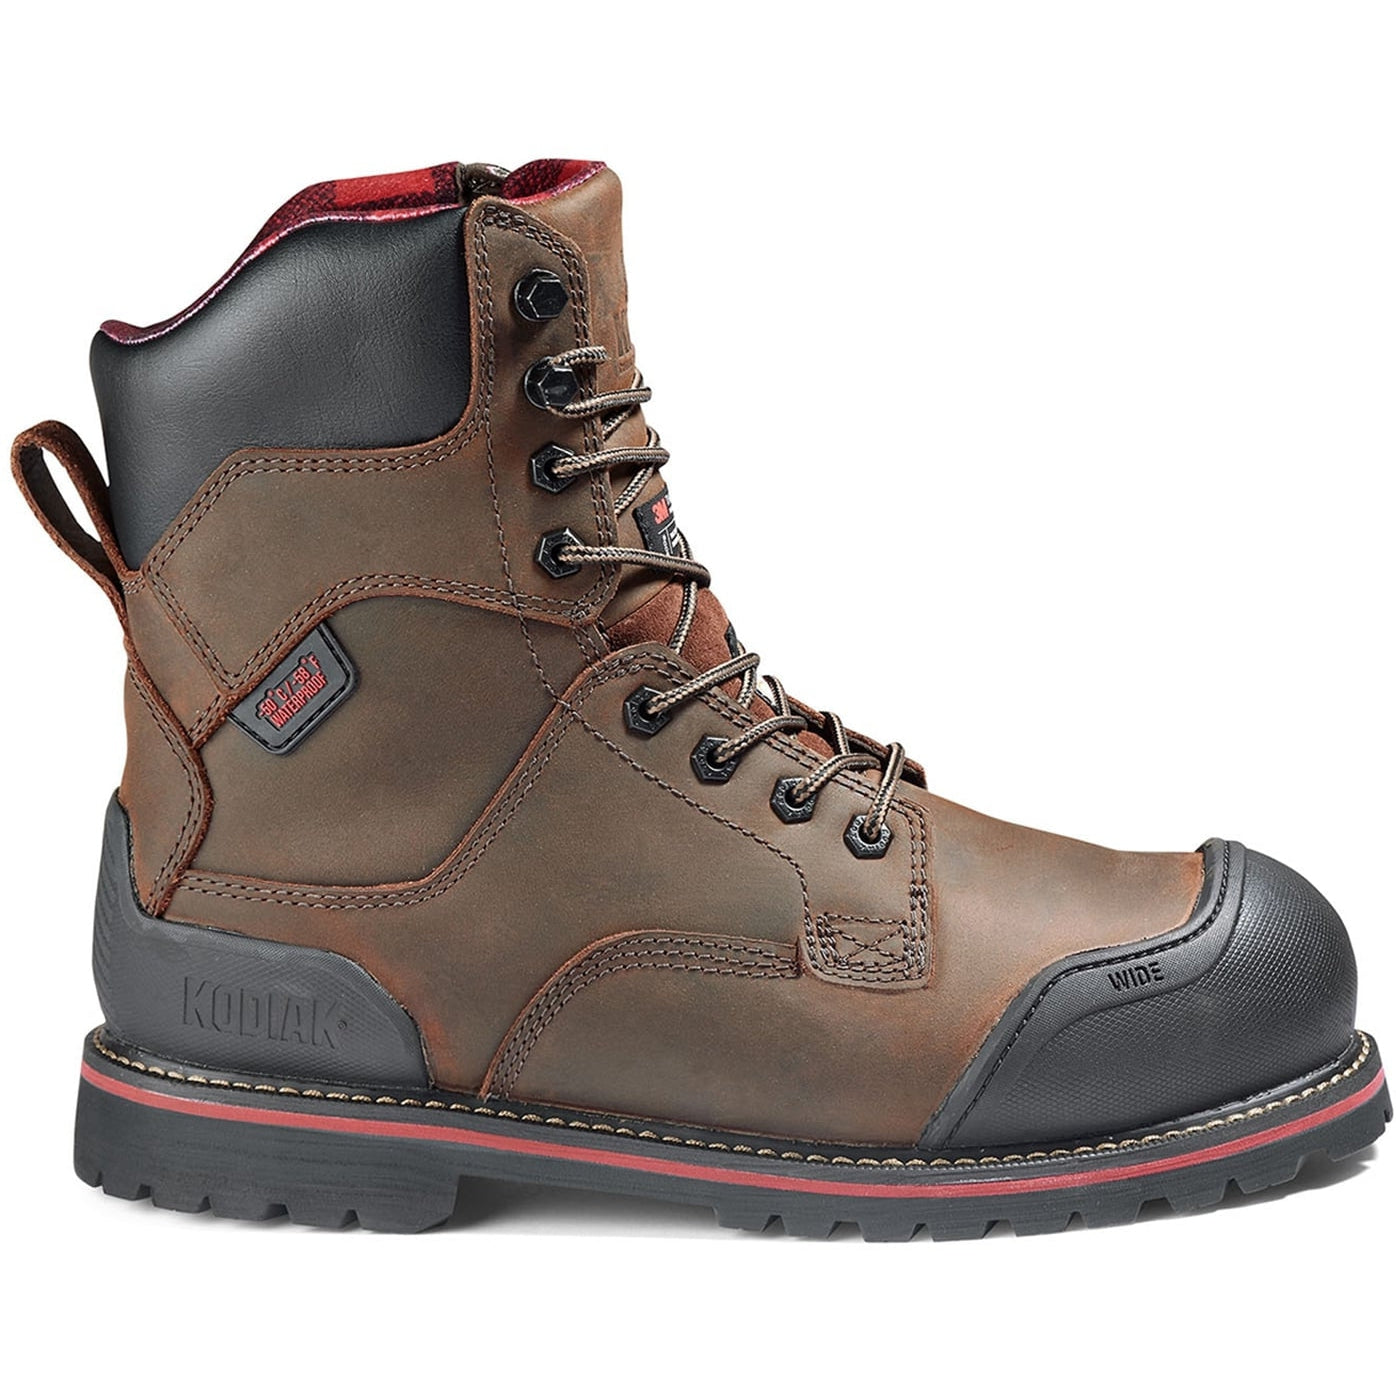 Kodiak Men's Widebody Warm 8" Comp Toe WP Work Boot -Brown- 8353DB 8 / Medium / Brown - Overlook Boots